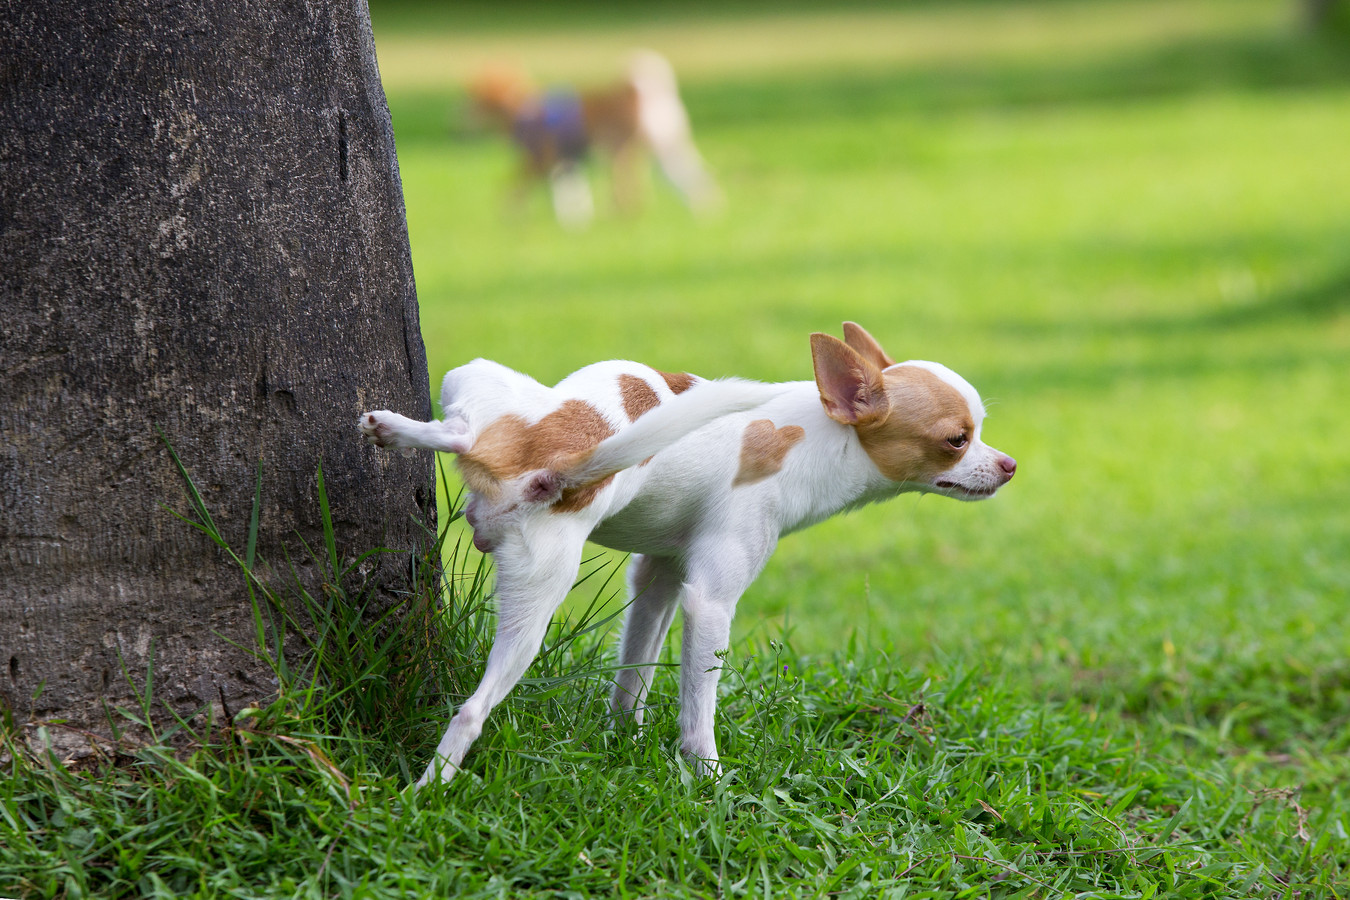 Kleine hondjes zoals deze vallen bijna om tijdens het 'hoger' markeren van een paaltje.